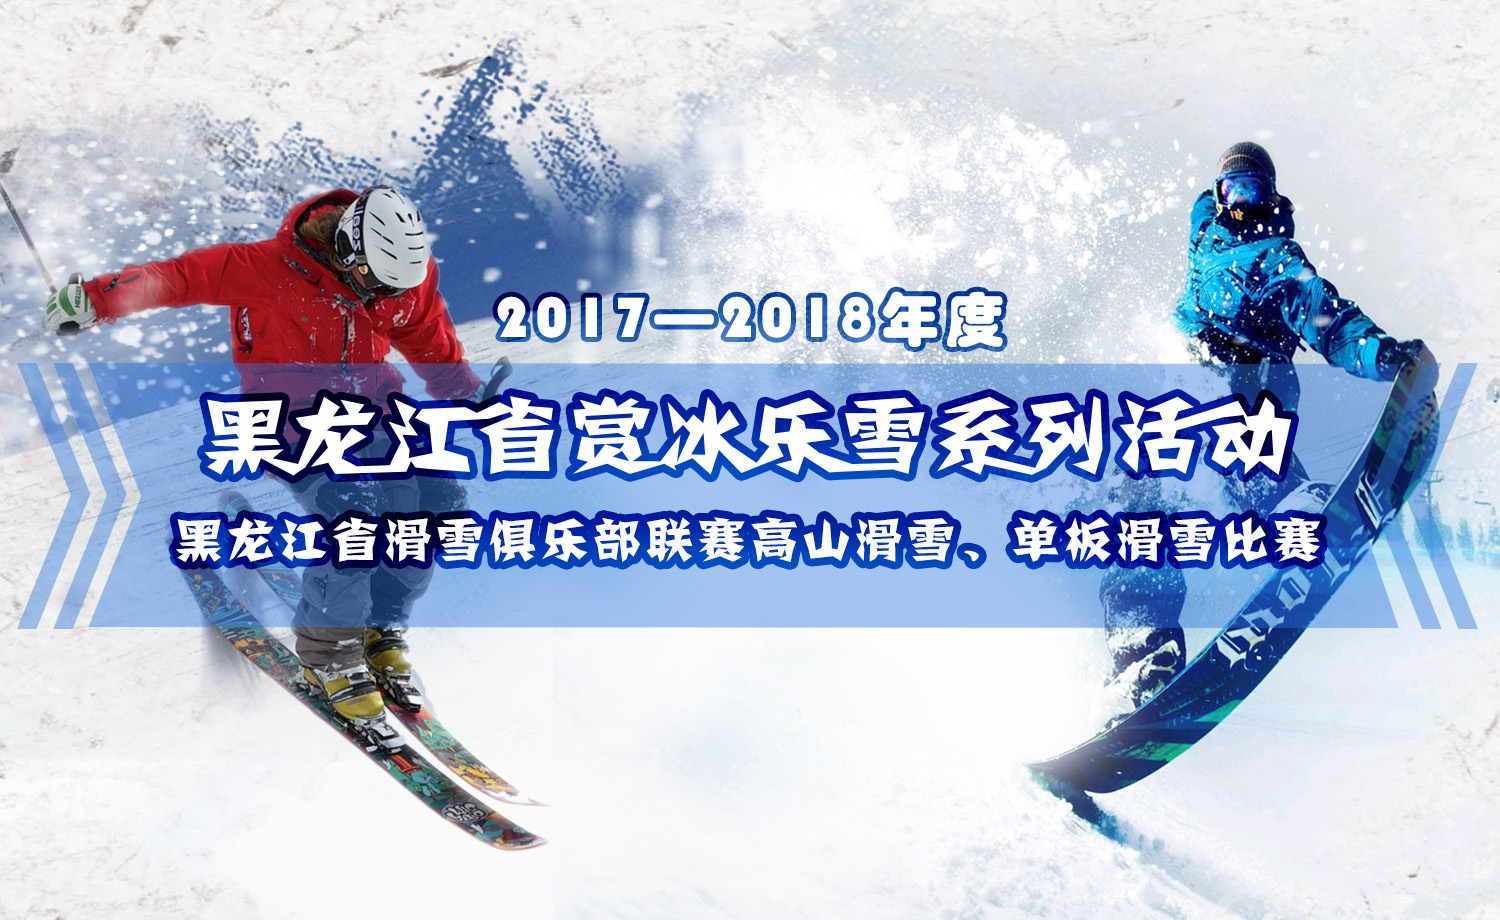 2017—2018年度黑龙江省赏冰乐雪系列活动——黑龙江省滑雪俱乐部联赛高山滑雪、单板滑雪比赛